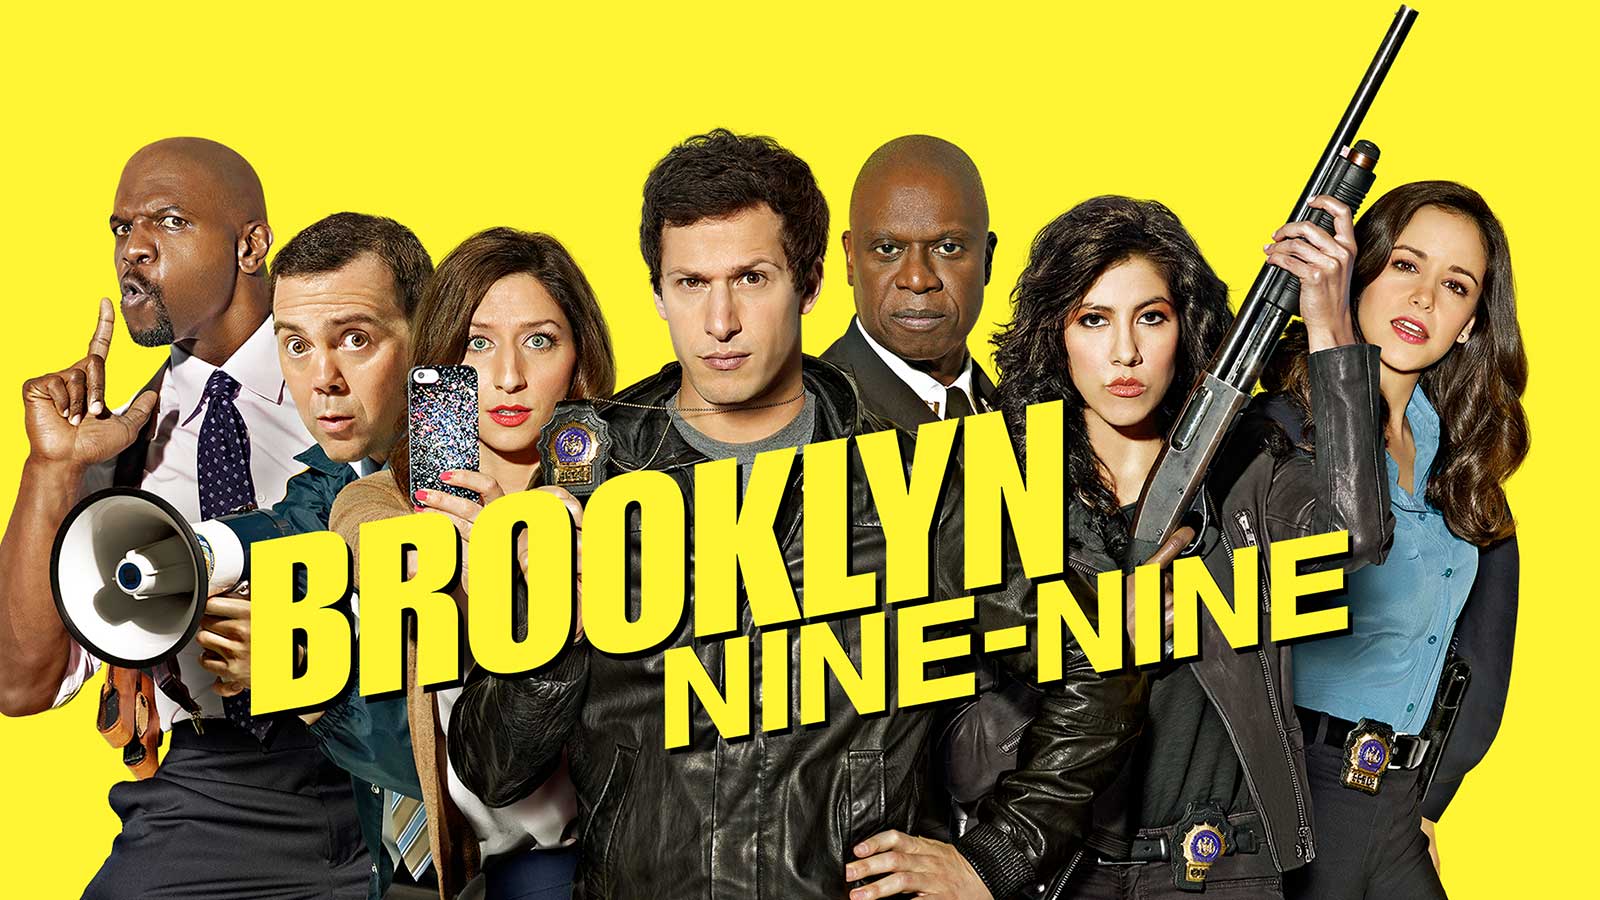  Brooklyn Nine-Nine (2013-2021) Brooklyn Nine-Nine (2013-2021) 